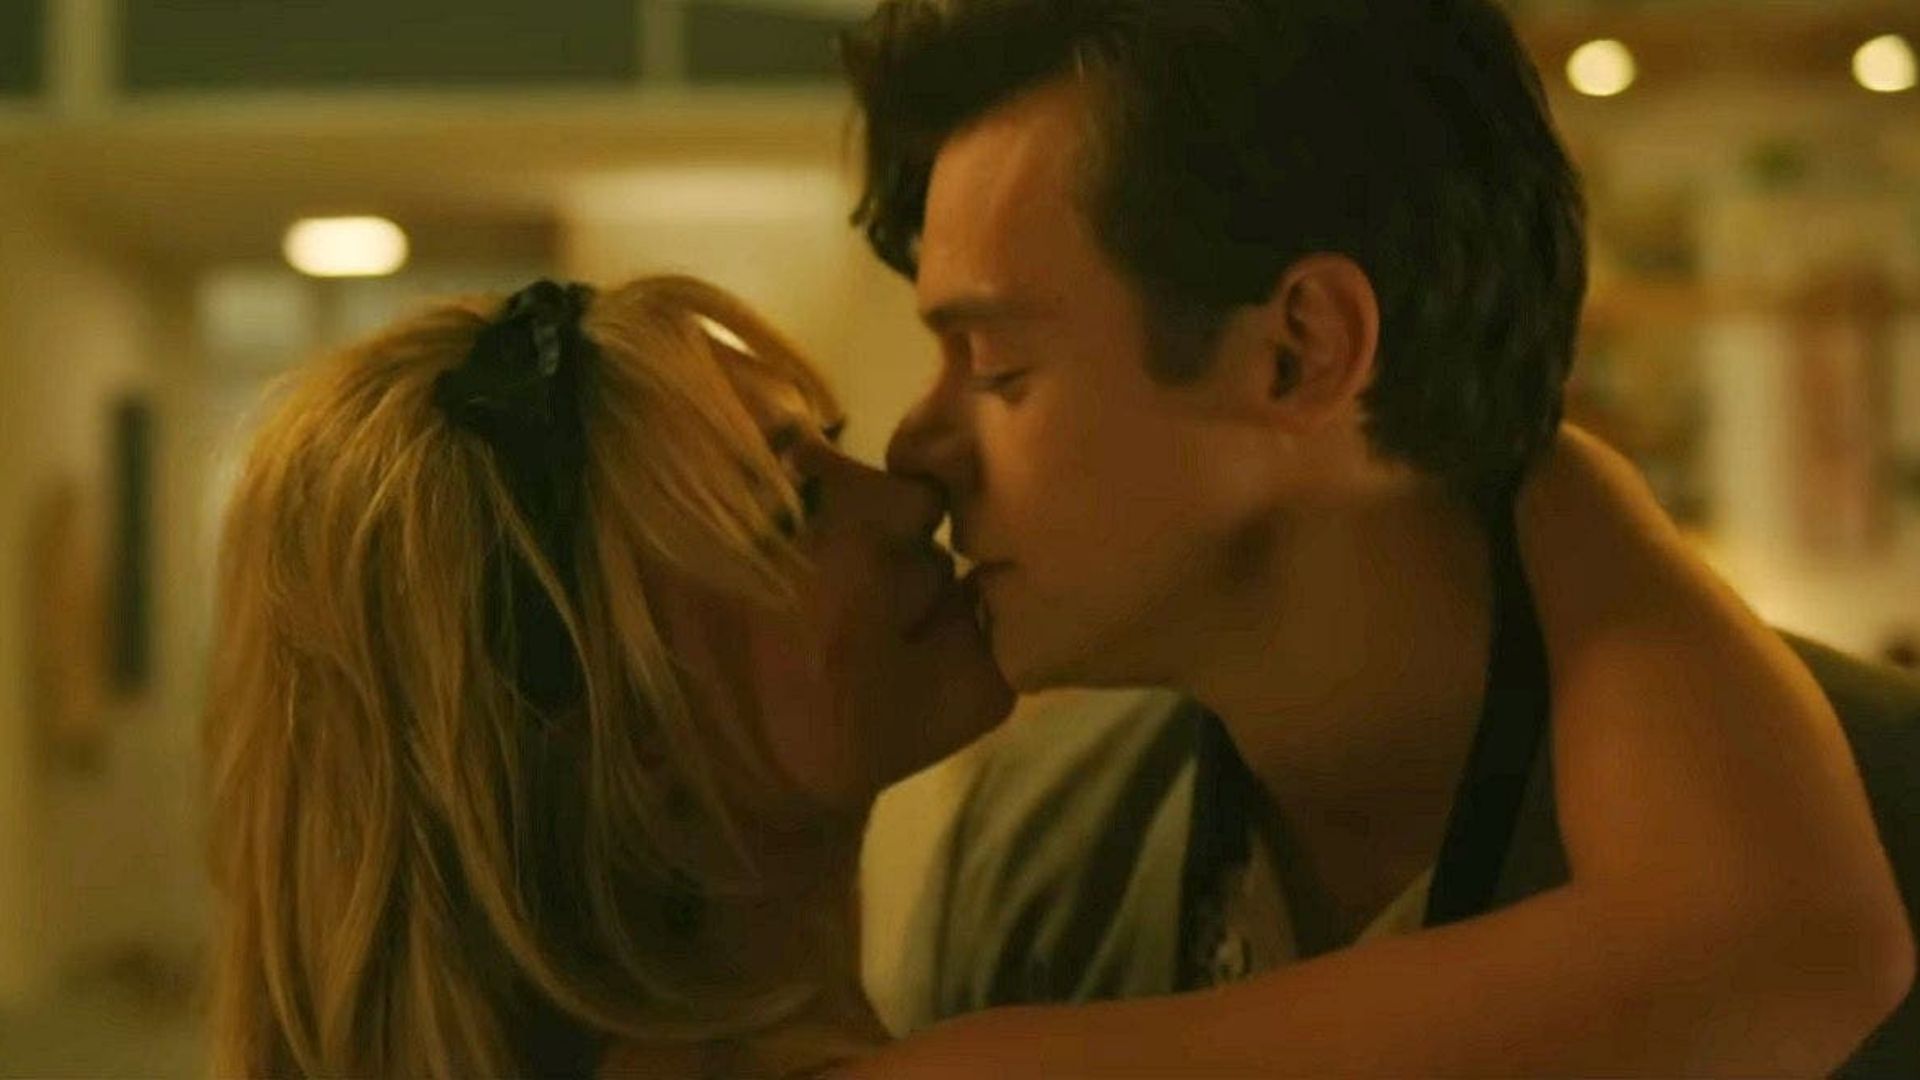 El tráiler de 'Don't Worry Darling' muestra a Florence Pugh y Harry Styles protagonizar un audaz thriller psicológico